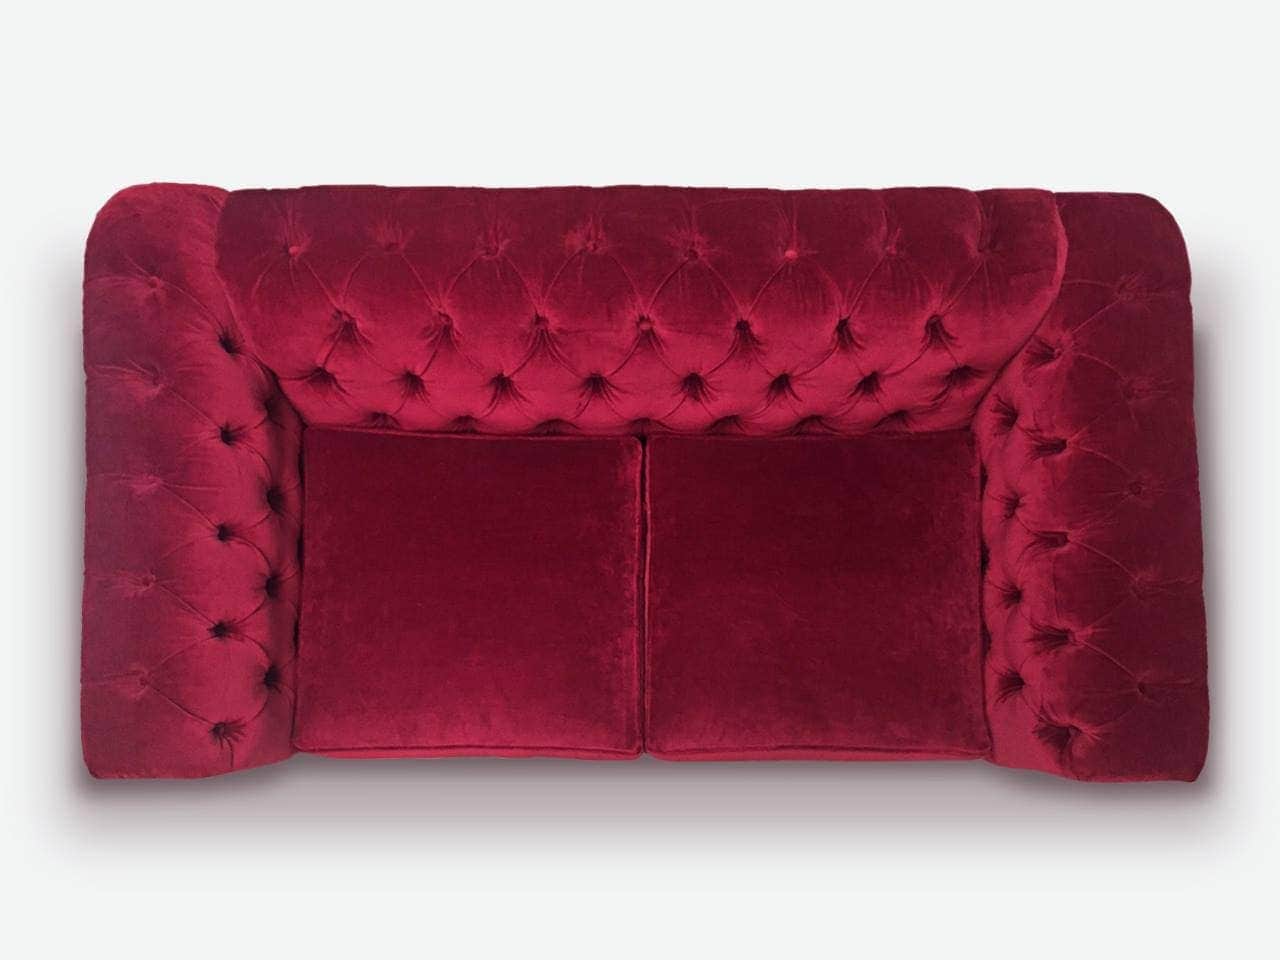 Irving Traditional Chesterfield Sofa in Custom Red Wine Velvet